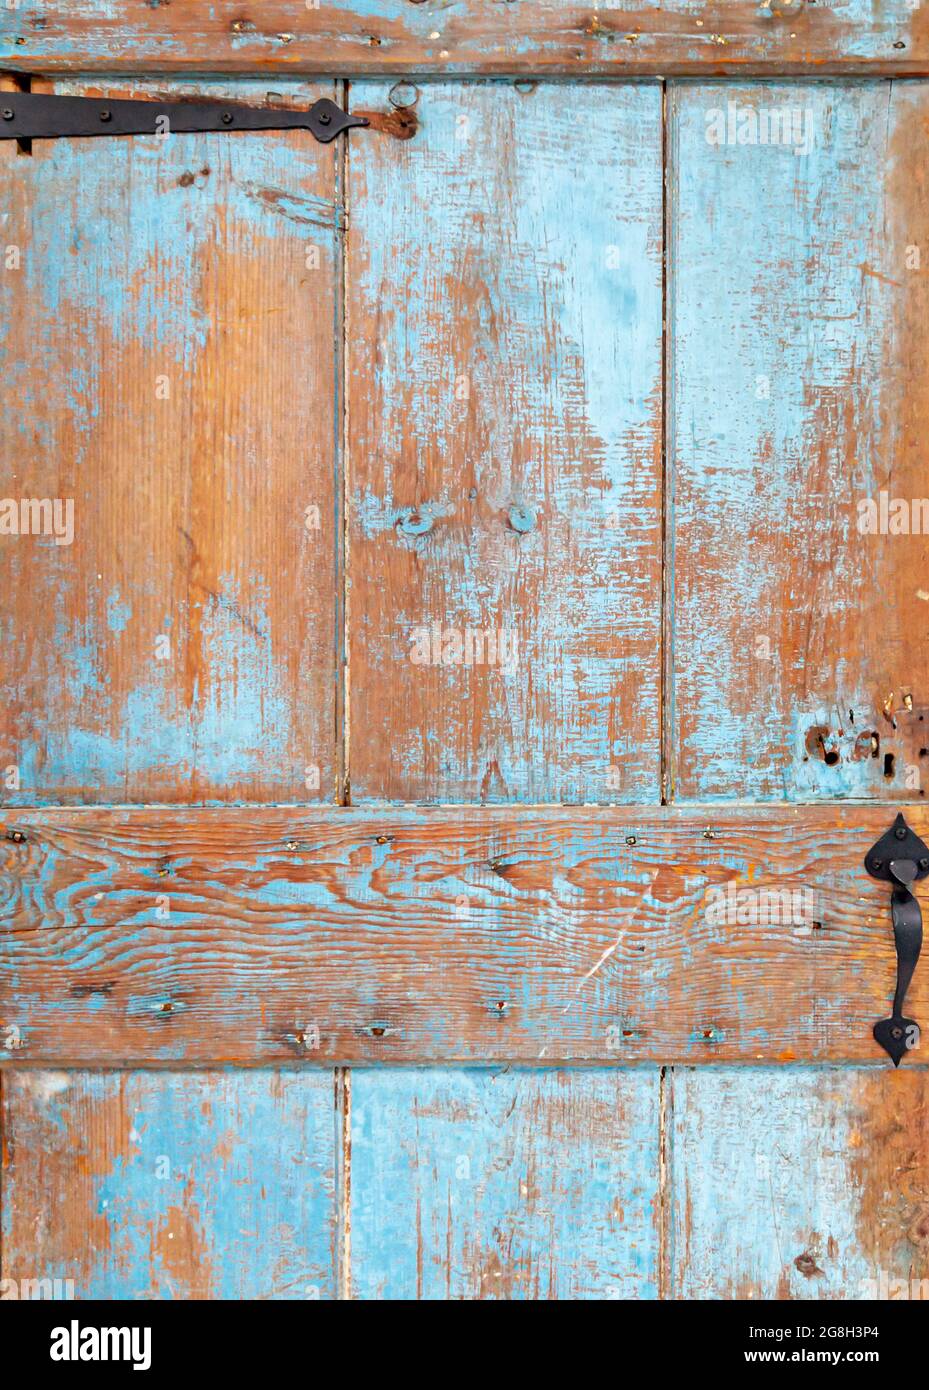 detail of an old wooden door Stock Photo